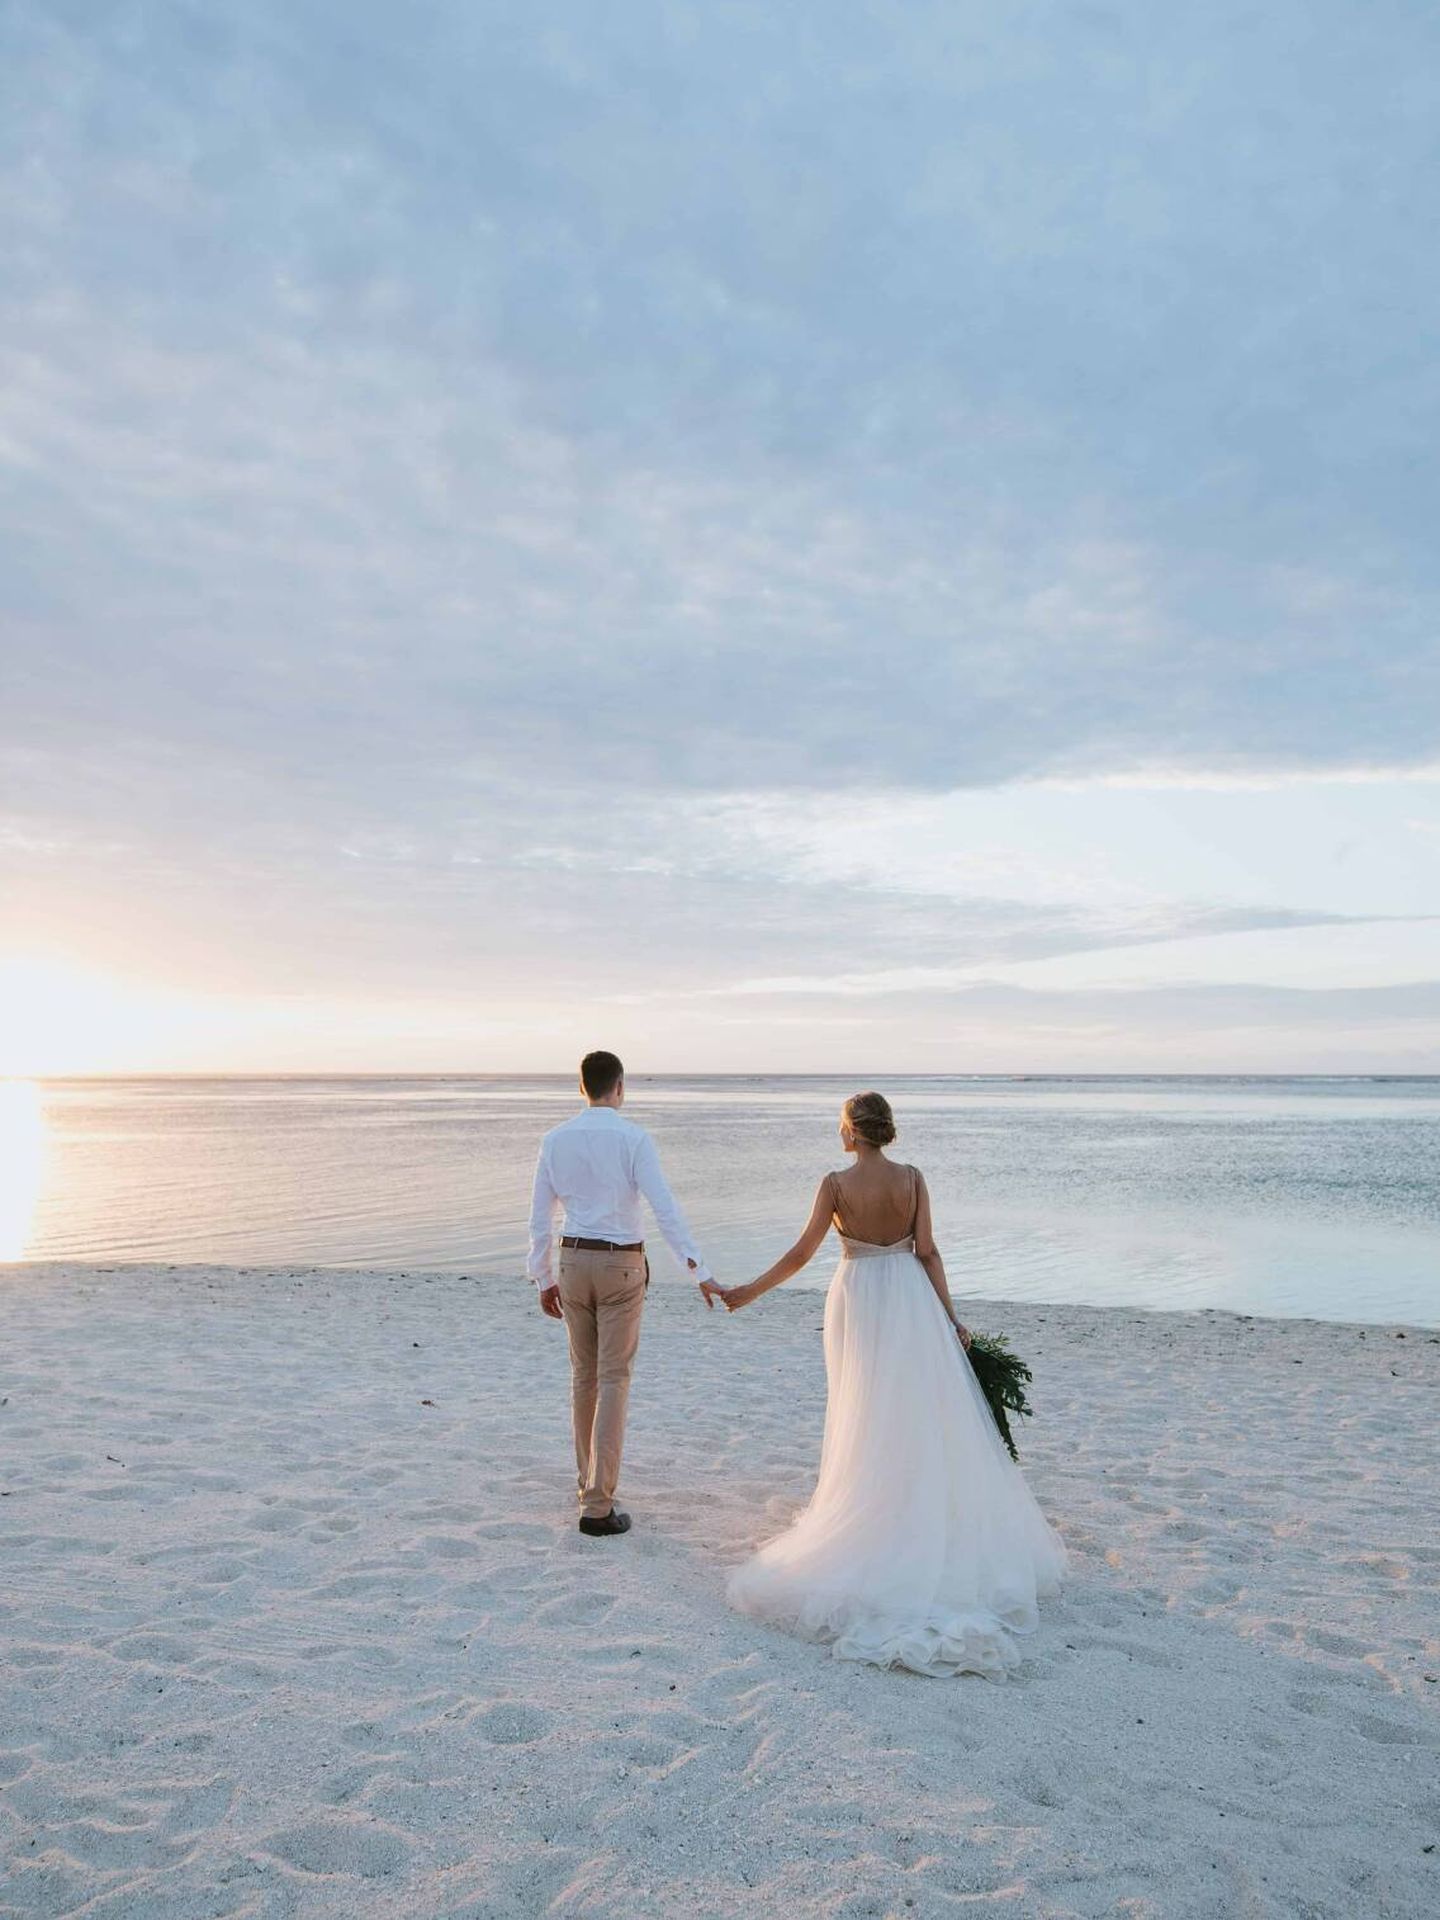 Cómo escoger el vestido de novia para una boda en la playa. (Focus Photography Mauritius para Unsplash)